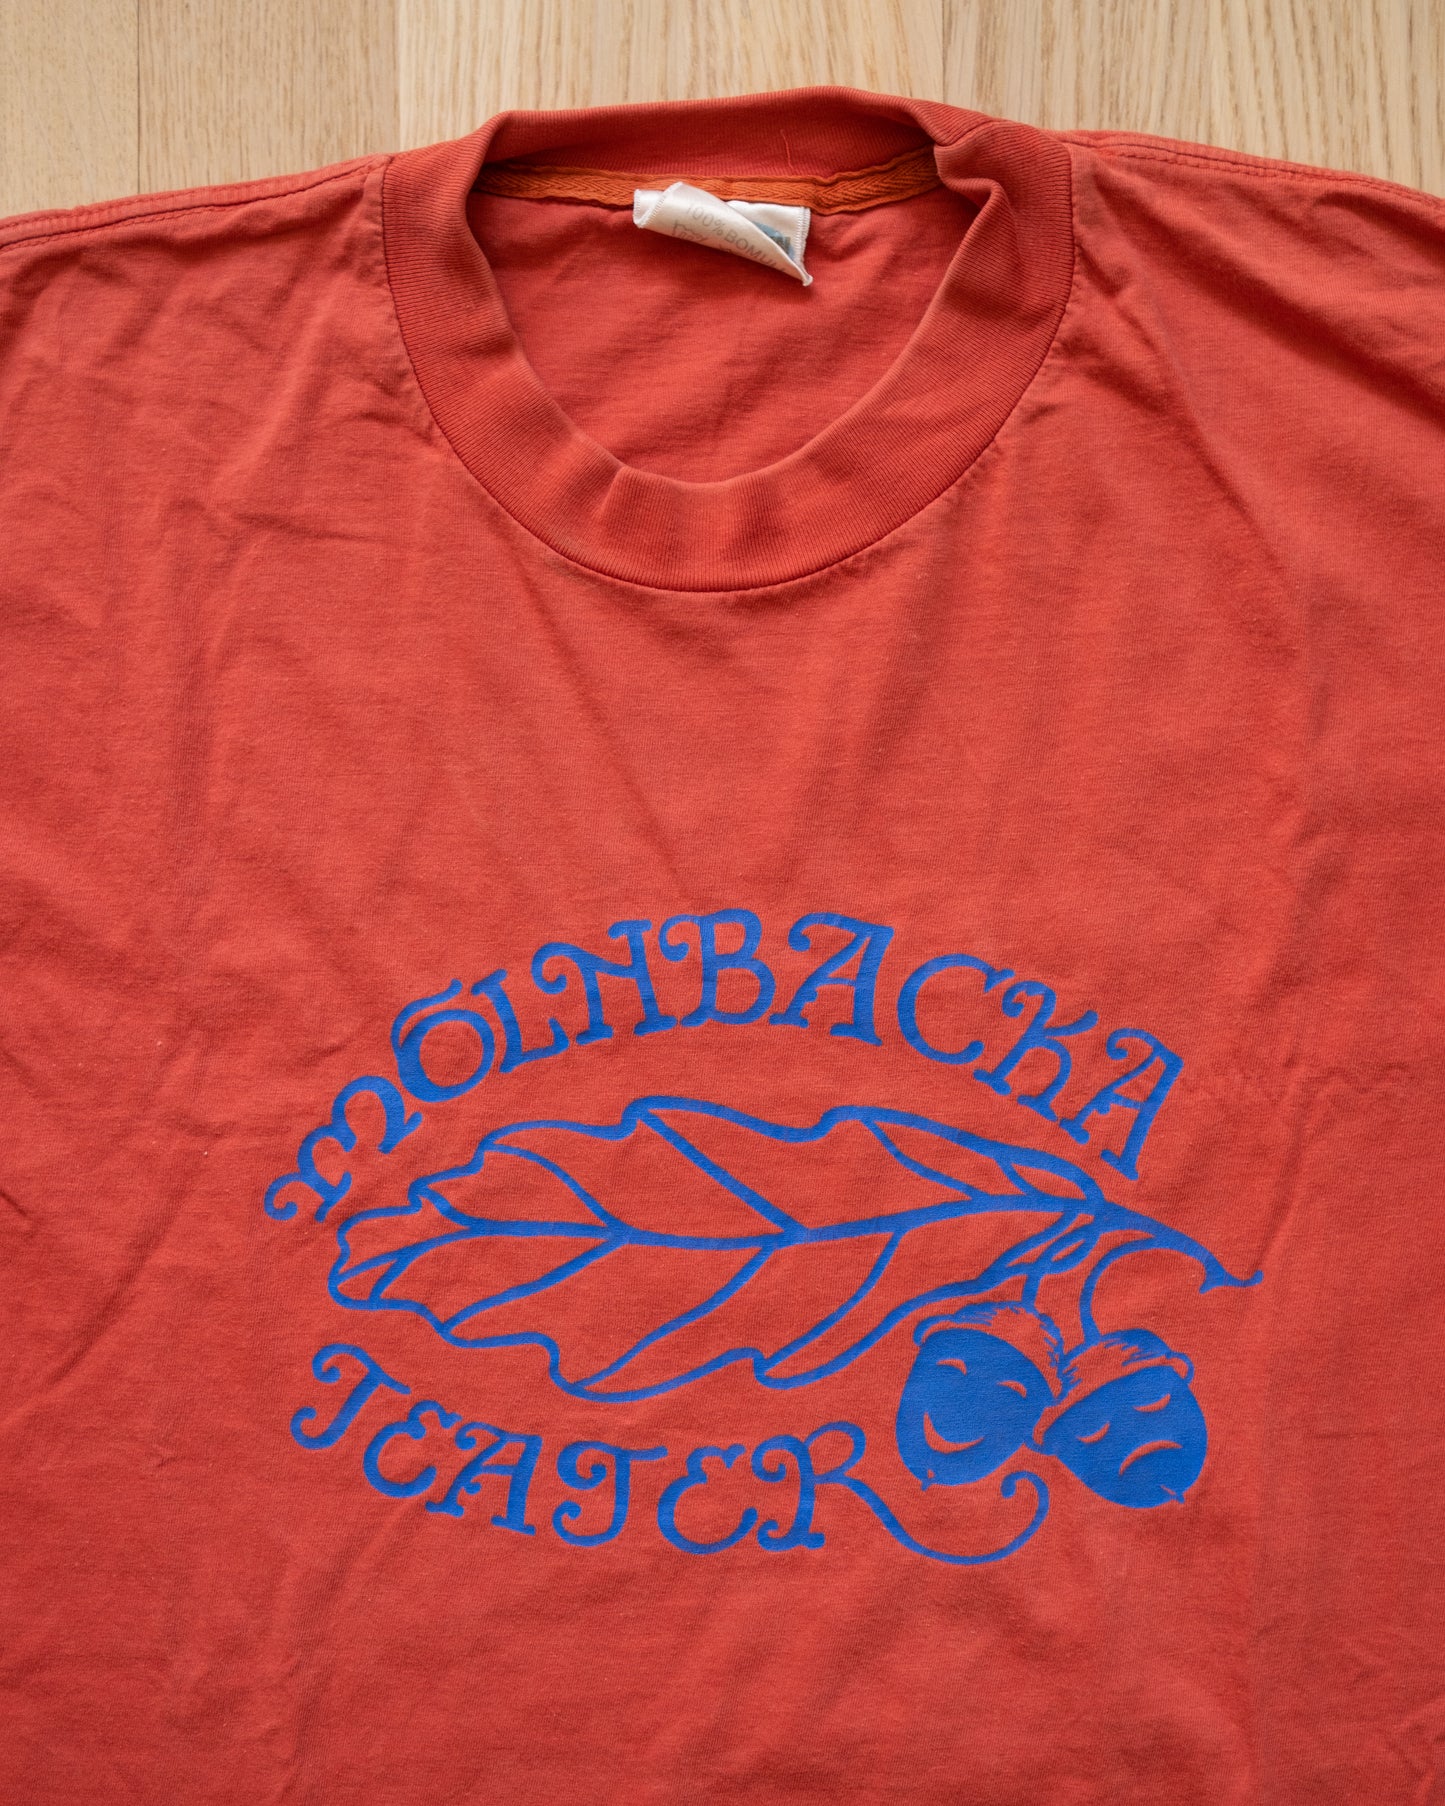 Mölnbacka Teater Vintage Single Stitch T-Shirt Size L